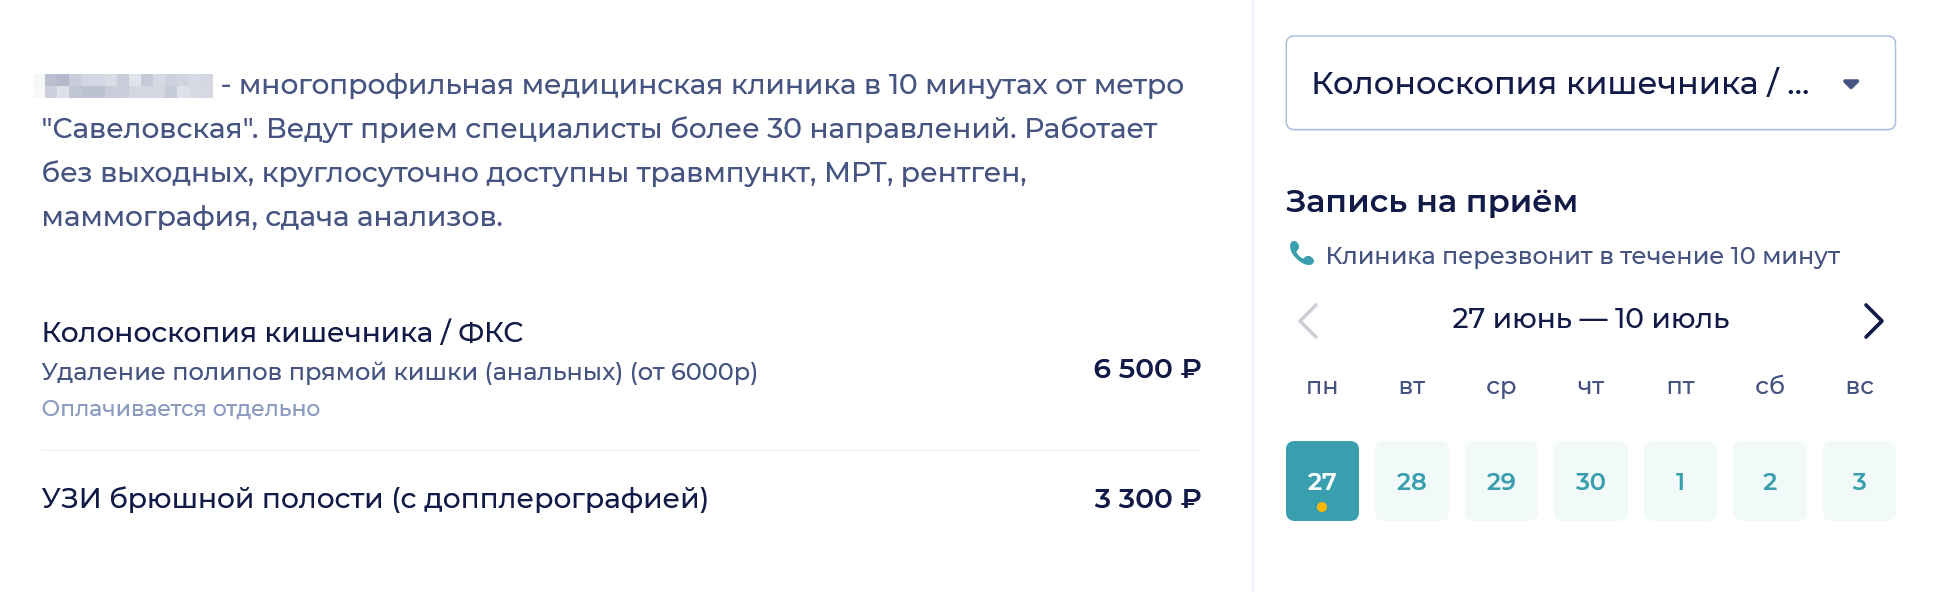 На некоторых сайтах можно сразу посмотреть цены и записаться на прием, выбрав дату и время. Источник: napopravku.ru